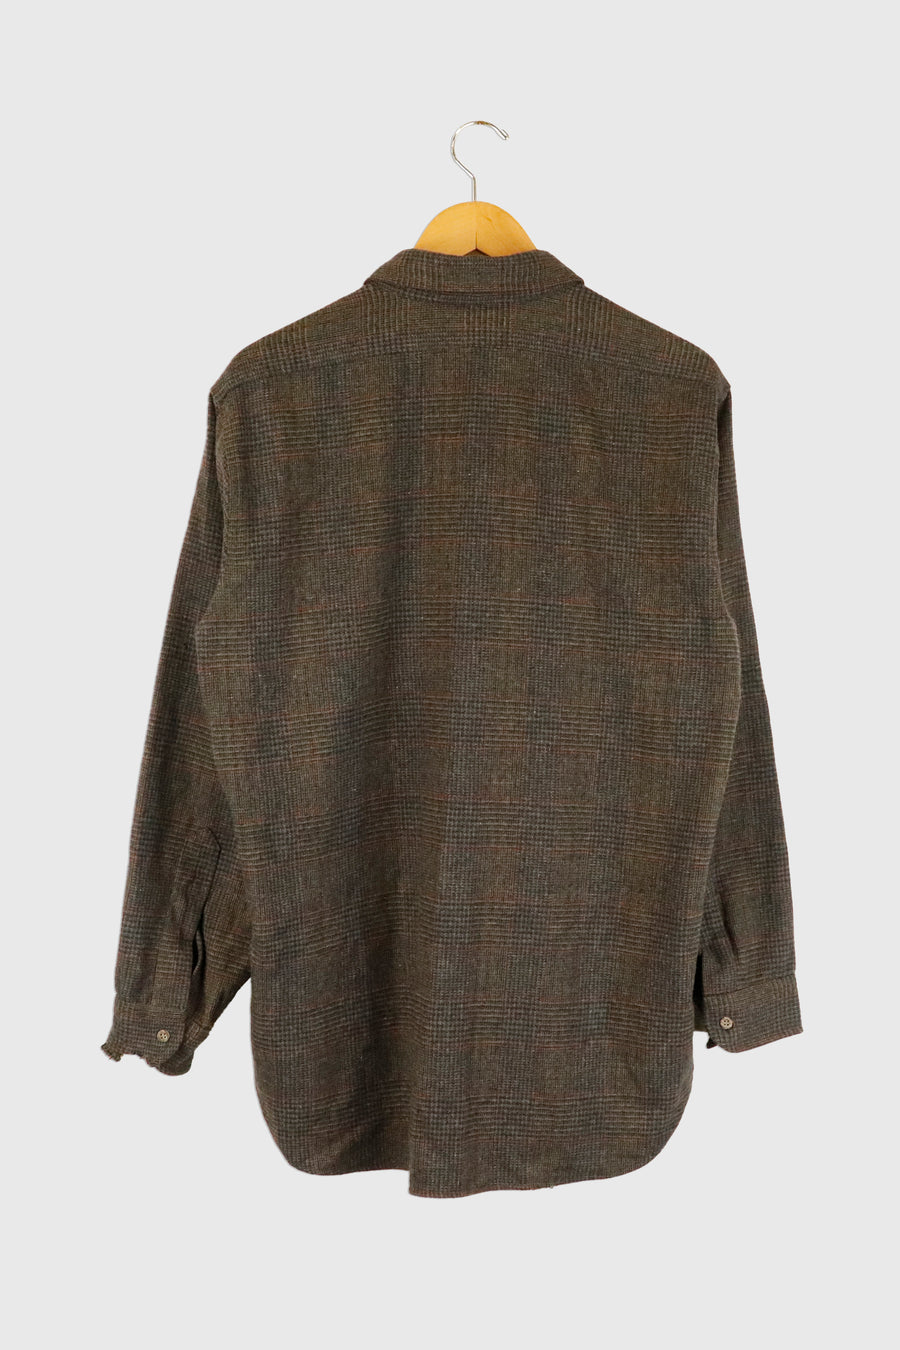 Vintage Button Up Pendleton Wool Flannel Sz L